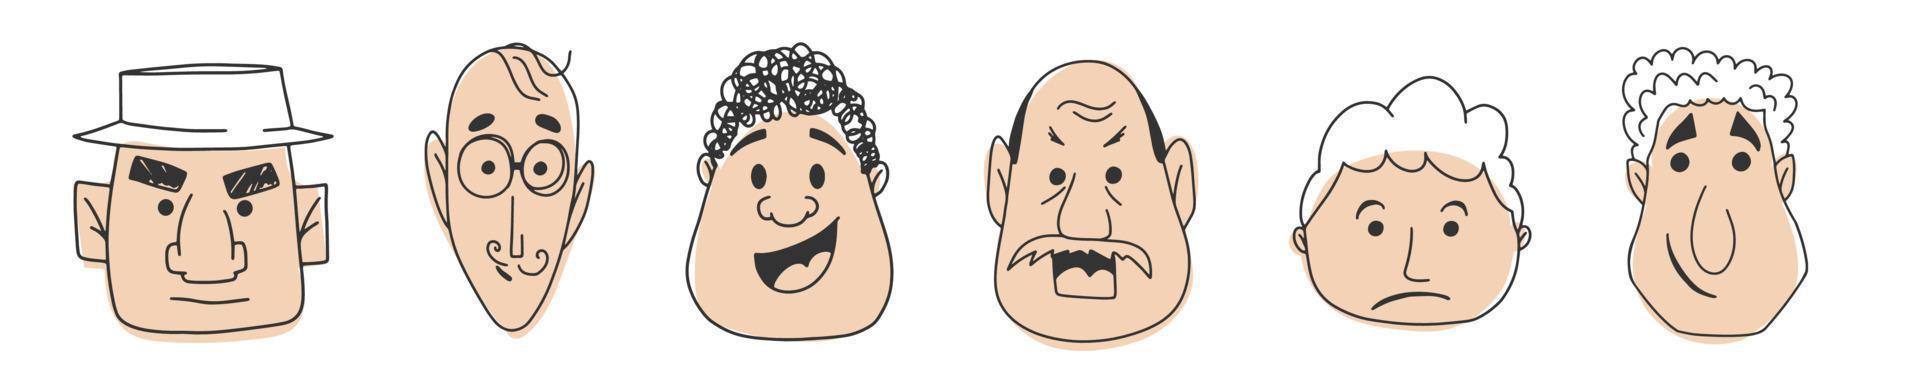 Doodle-Set von Gesichtsmännern mit unterschiedlichen Emotionen. handgezeichnete Vektor-Cliparts isoliert auf weißem Hintergrund. vektor